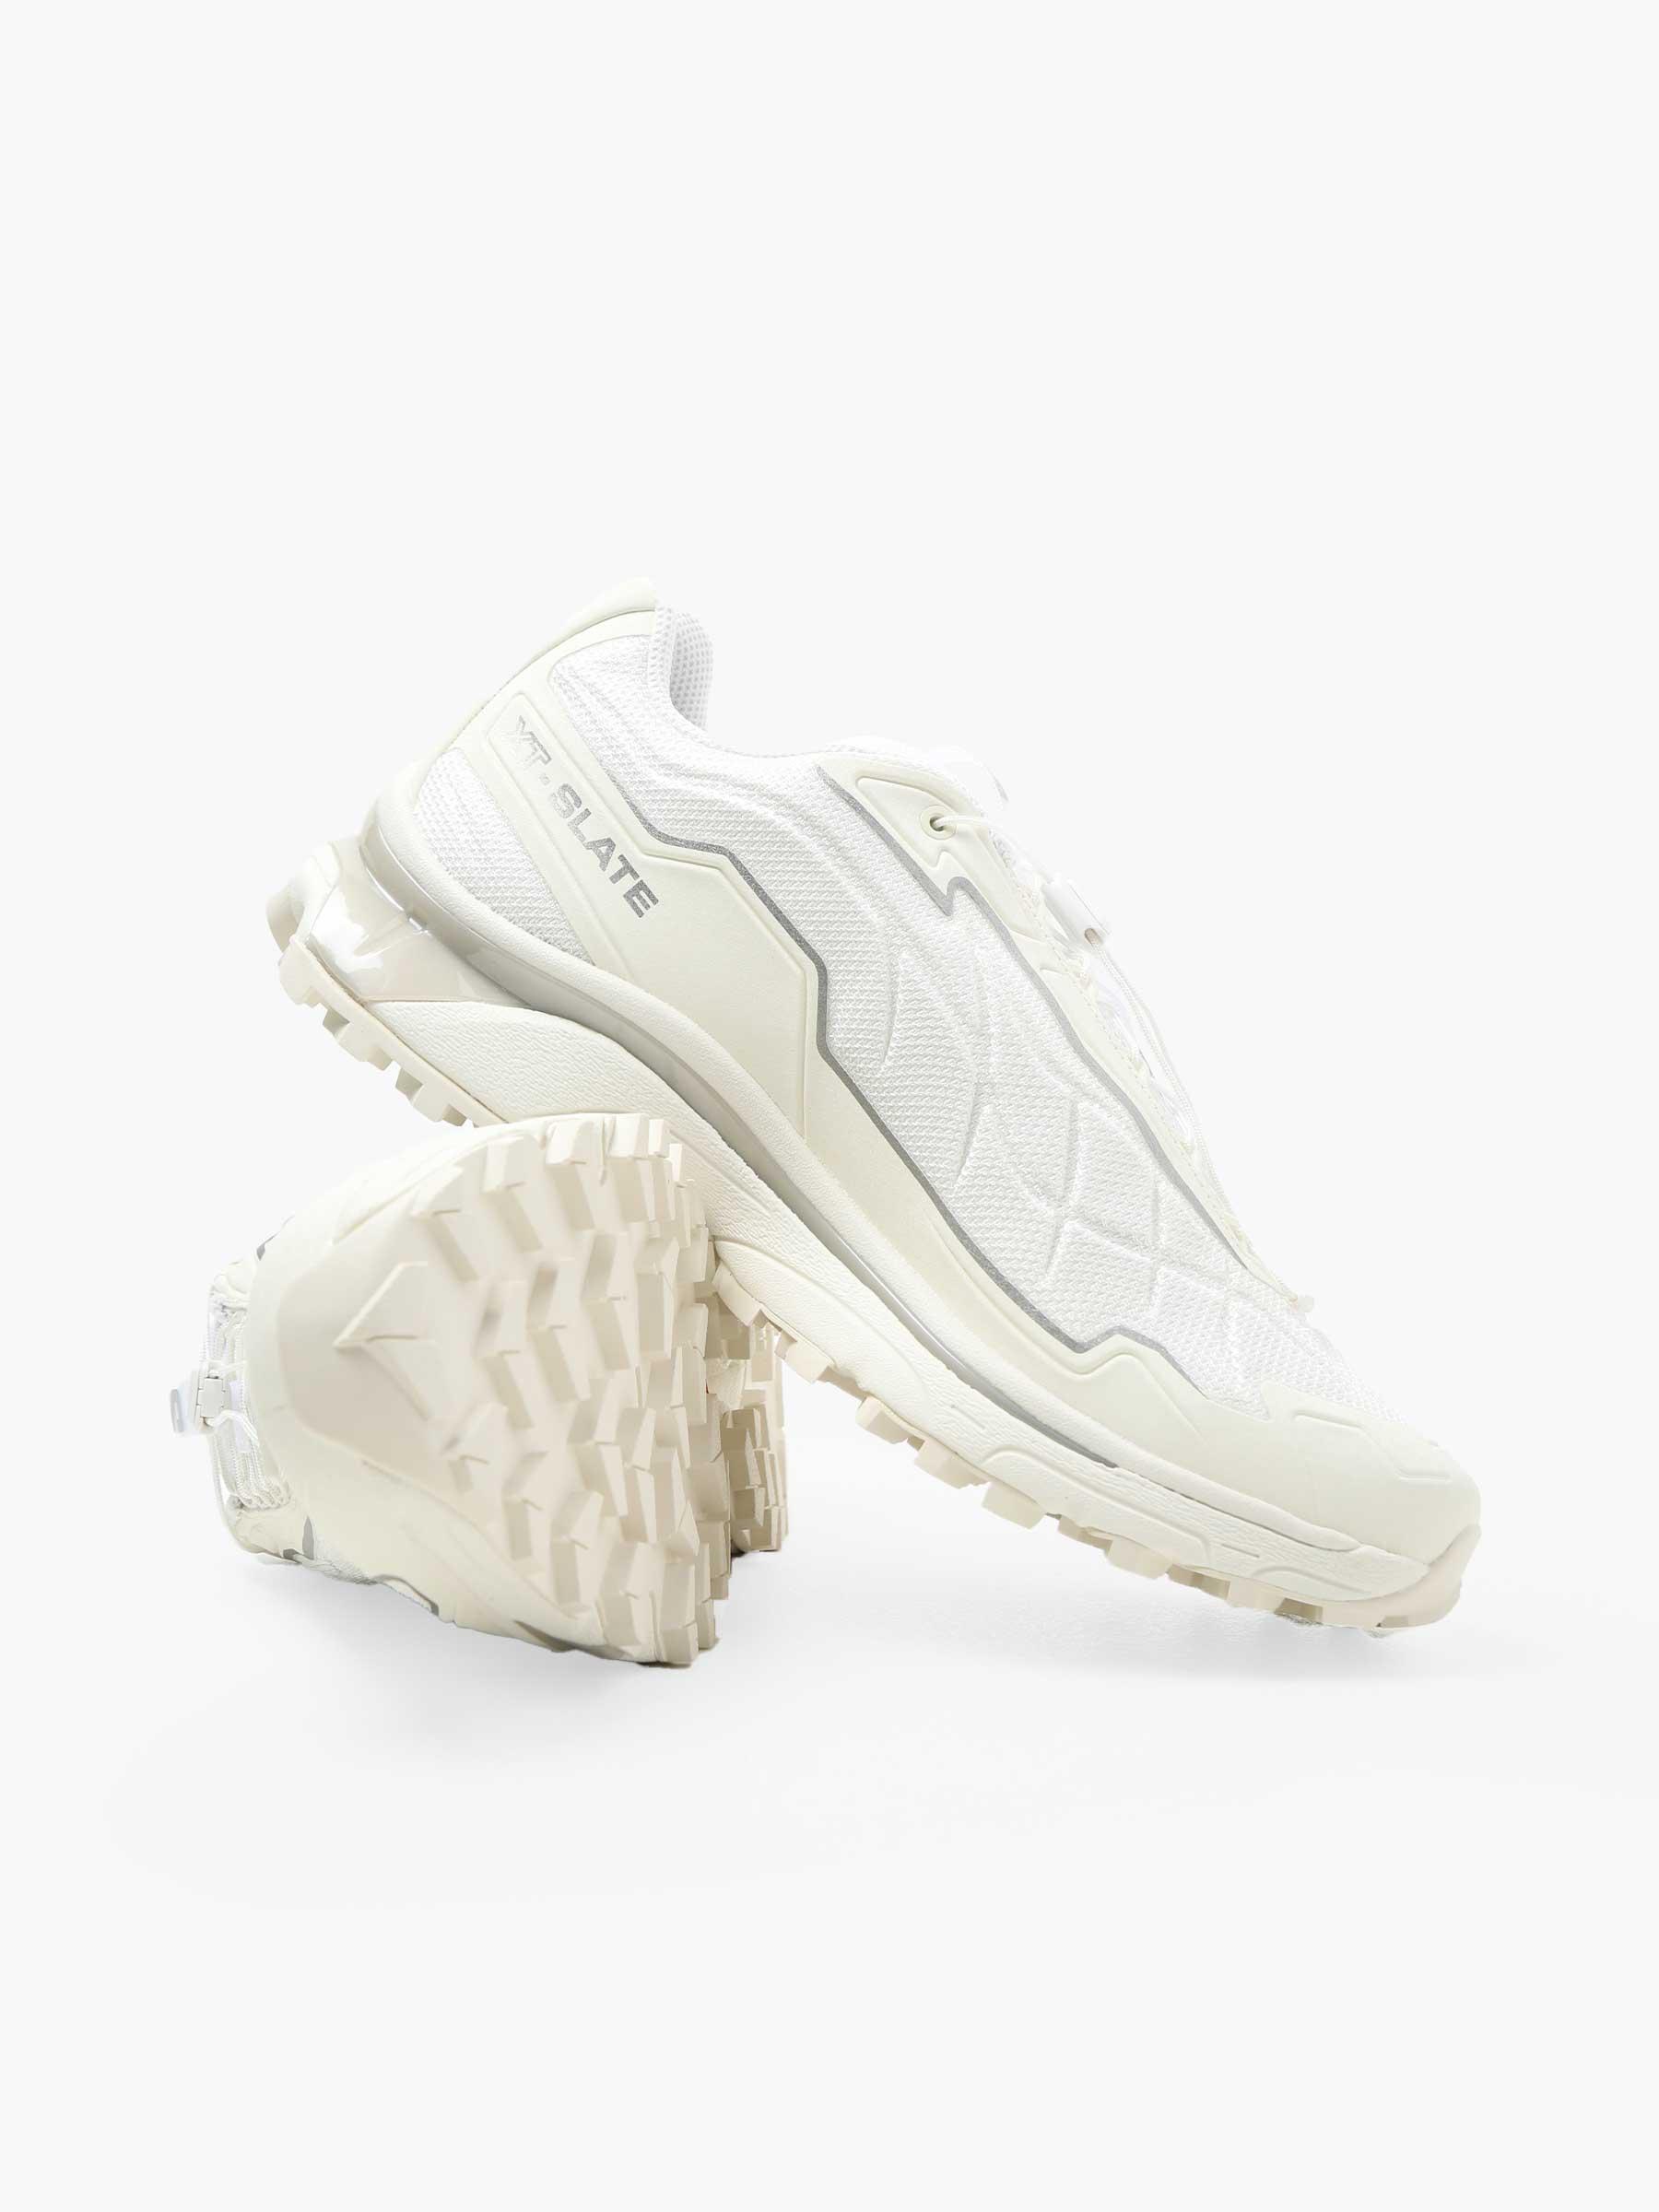 XT-Slate Vanila White Footwear Silver L47460900